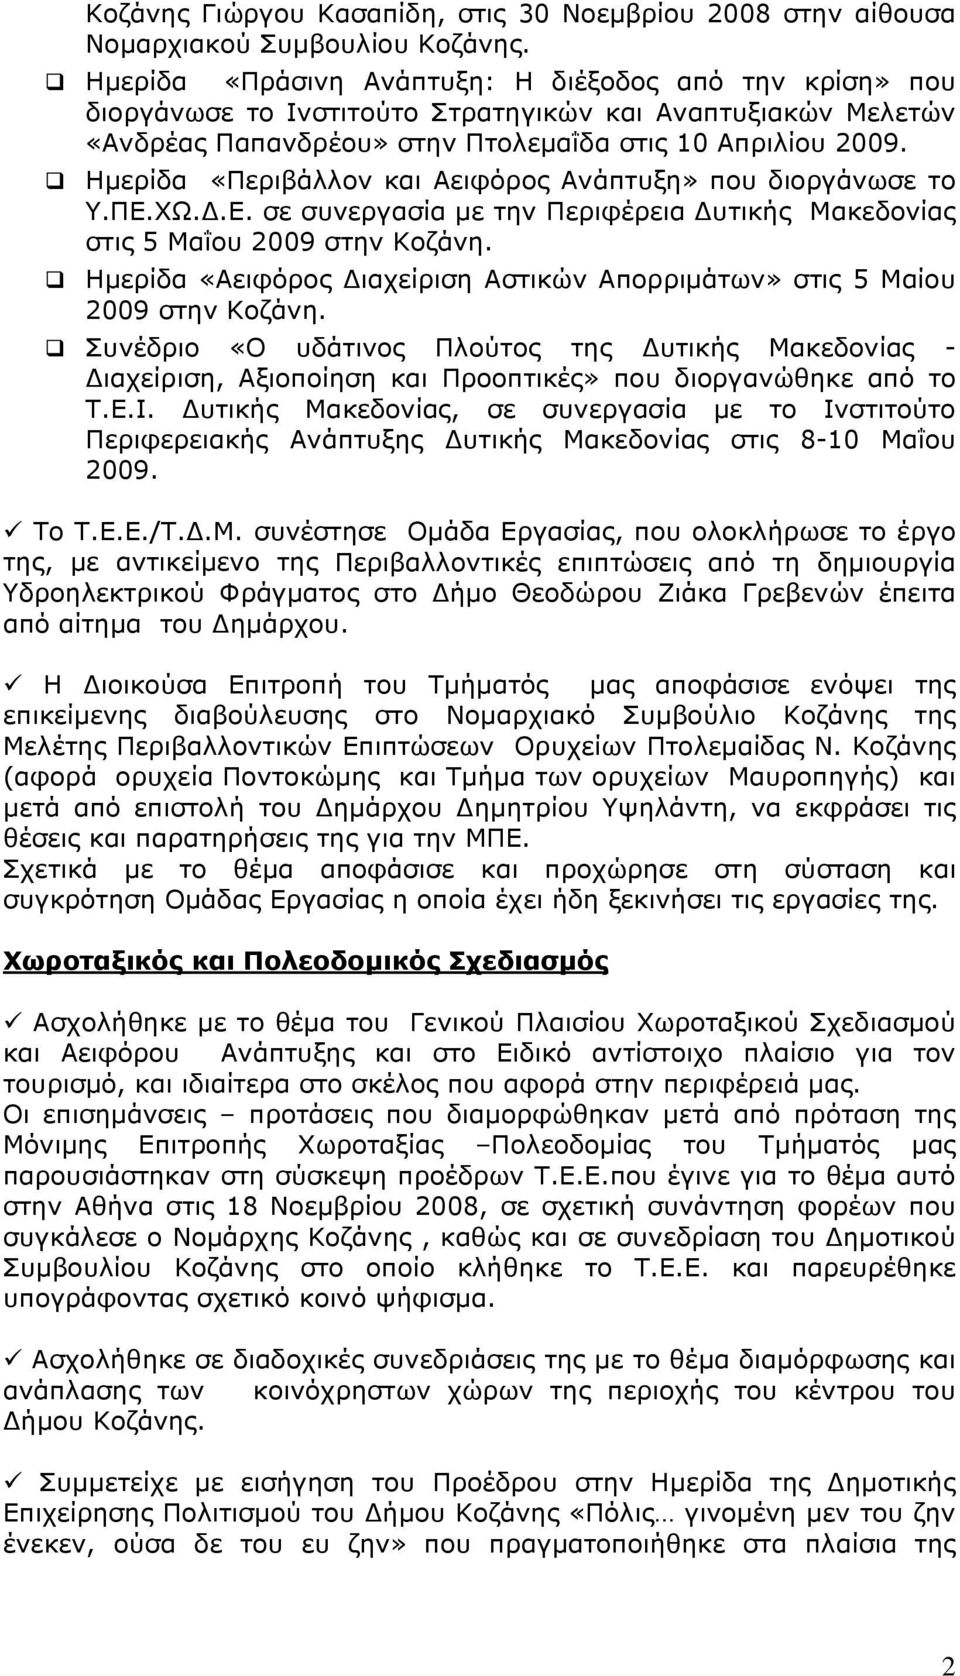 Ημερίδα «Περιβάλλον και Αειφόρος Ανάπτυξη» που διοργάνωσε το Υ.ΠΕ.ΧΩ.Δ.Ε. σε συνεργασία με την Περιφέρεια Δυτικής Μακεδονίας στις 5 Μαΐου 2009 στην Κοζάνη.